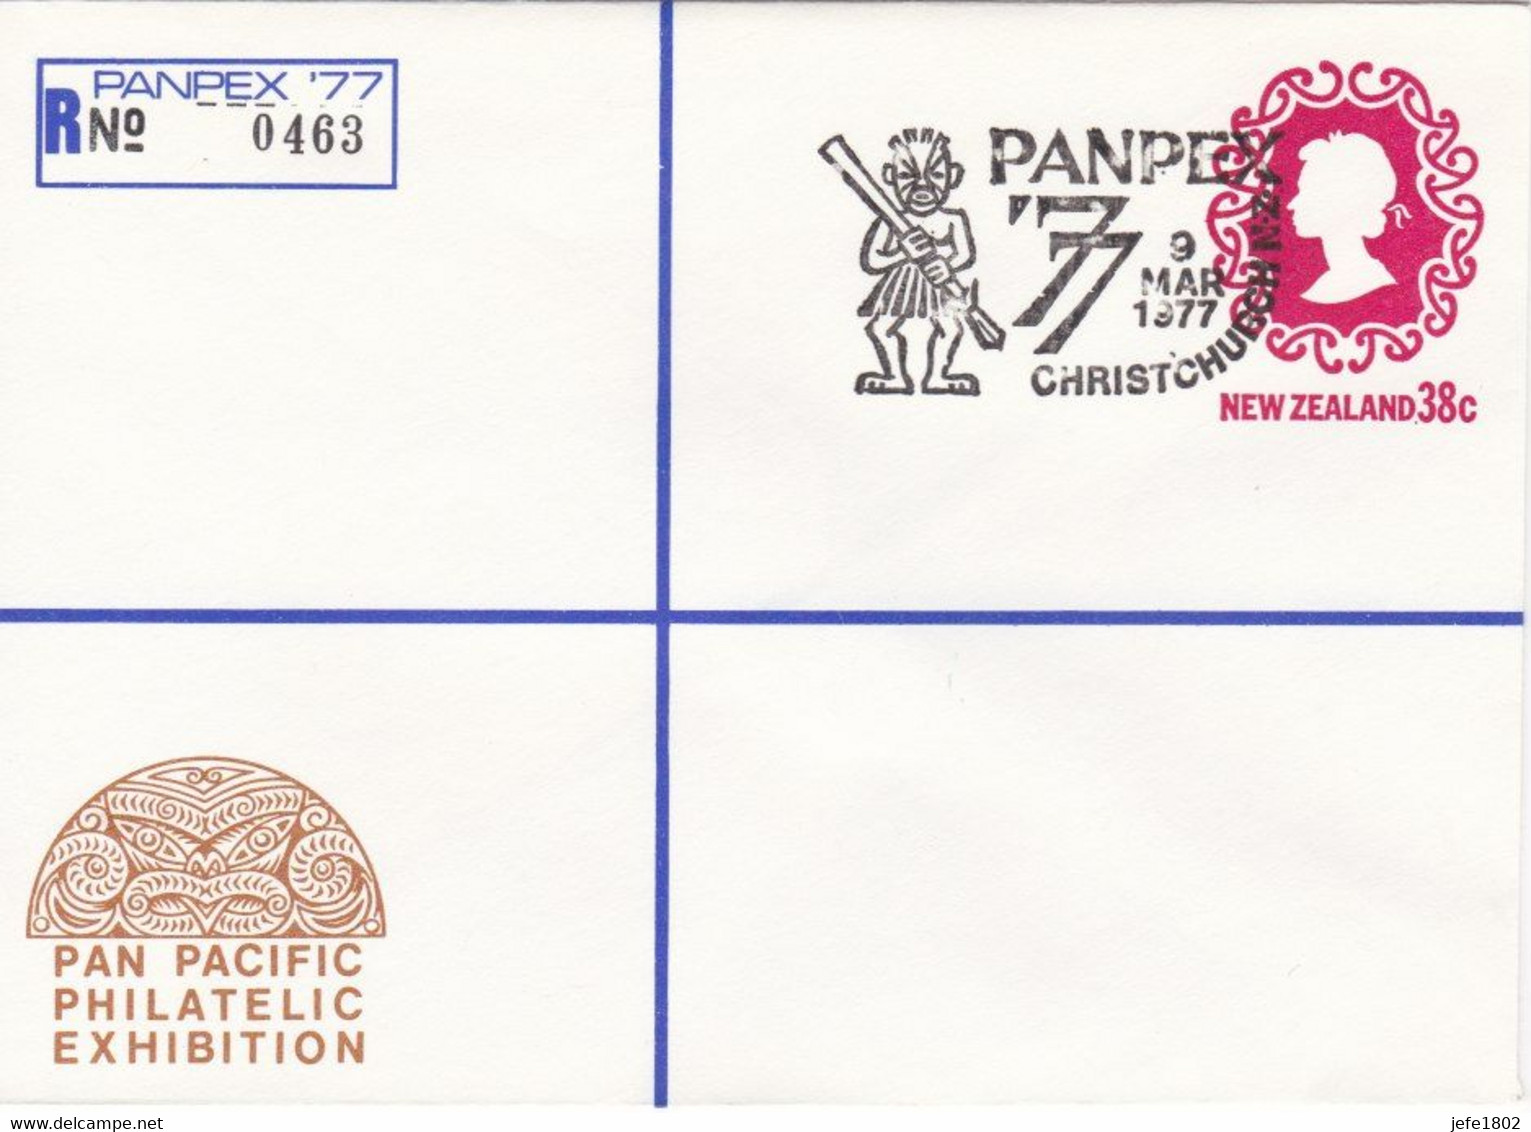 Registered Letter PANPEX '77 - N° 0463 - TEKO-TEKO Gable Ornament From Roof Of House - 9 Mar 1977 - Postal Stationery